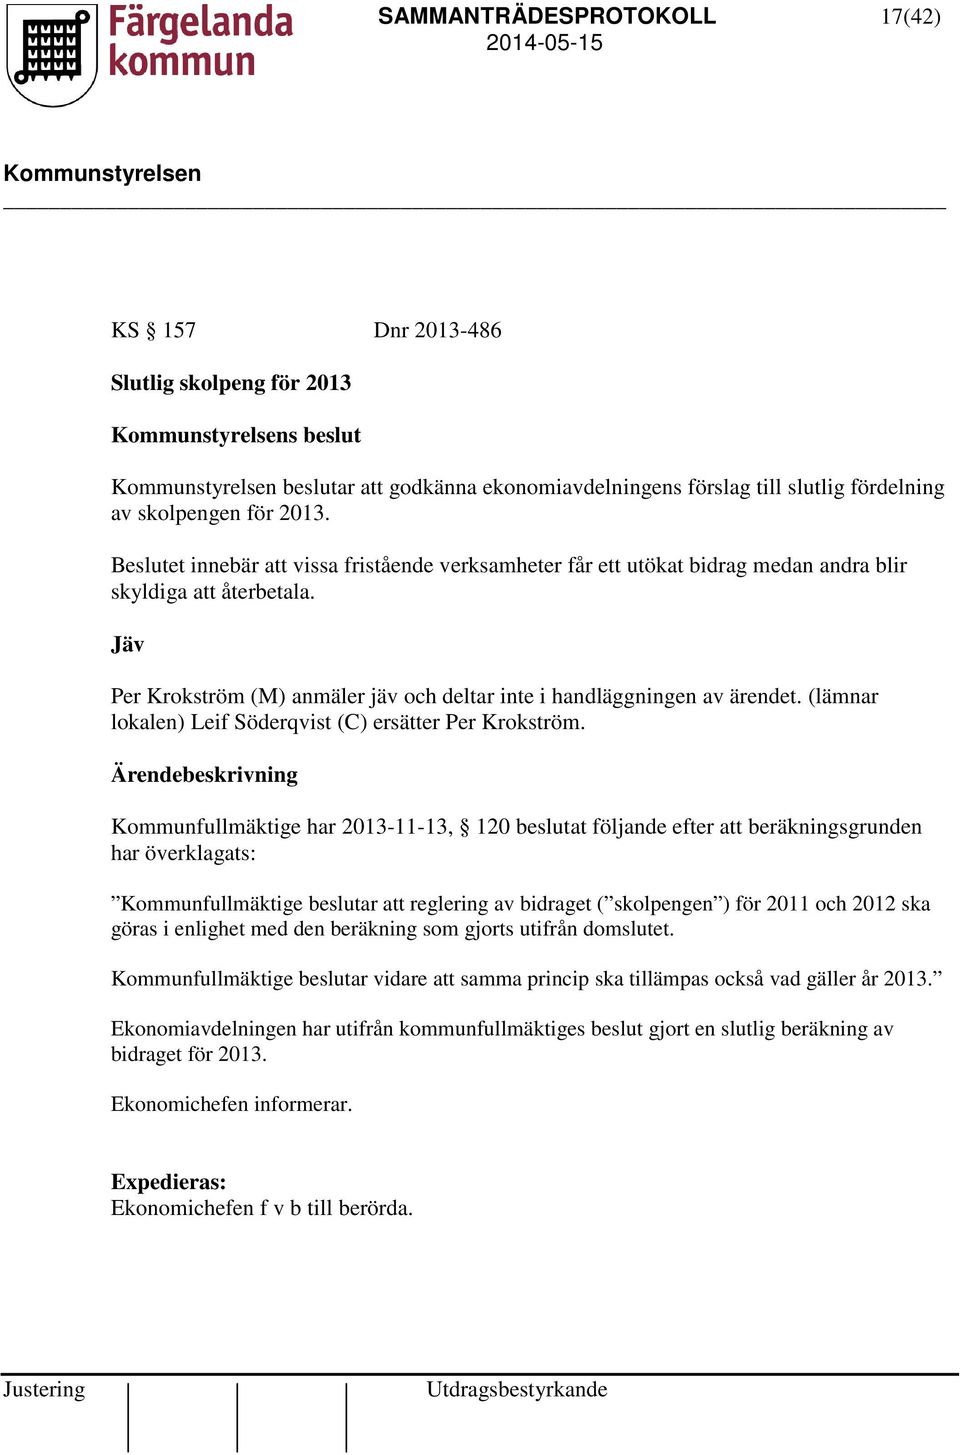 (lämnar lokalen) Leif Söderqvist (C) ersätter Per Krokström.